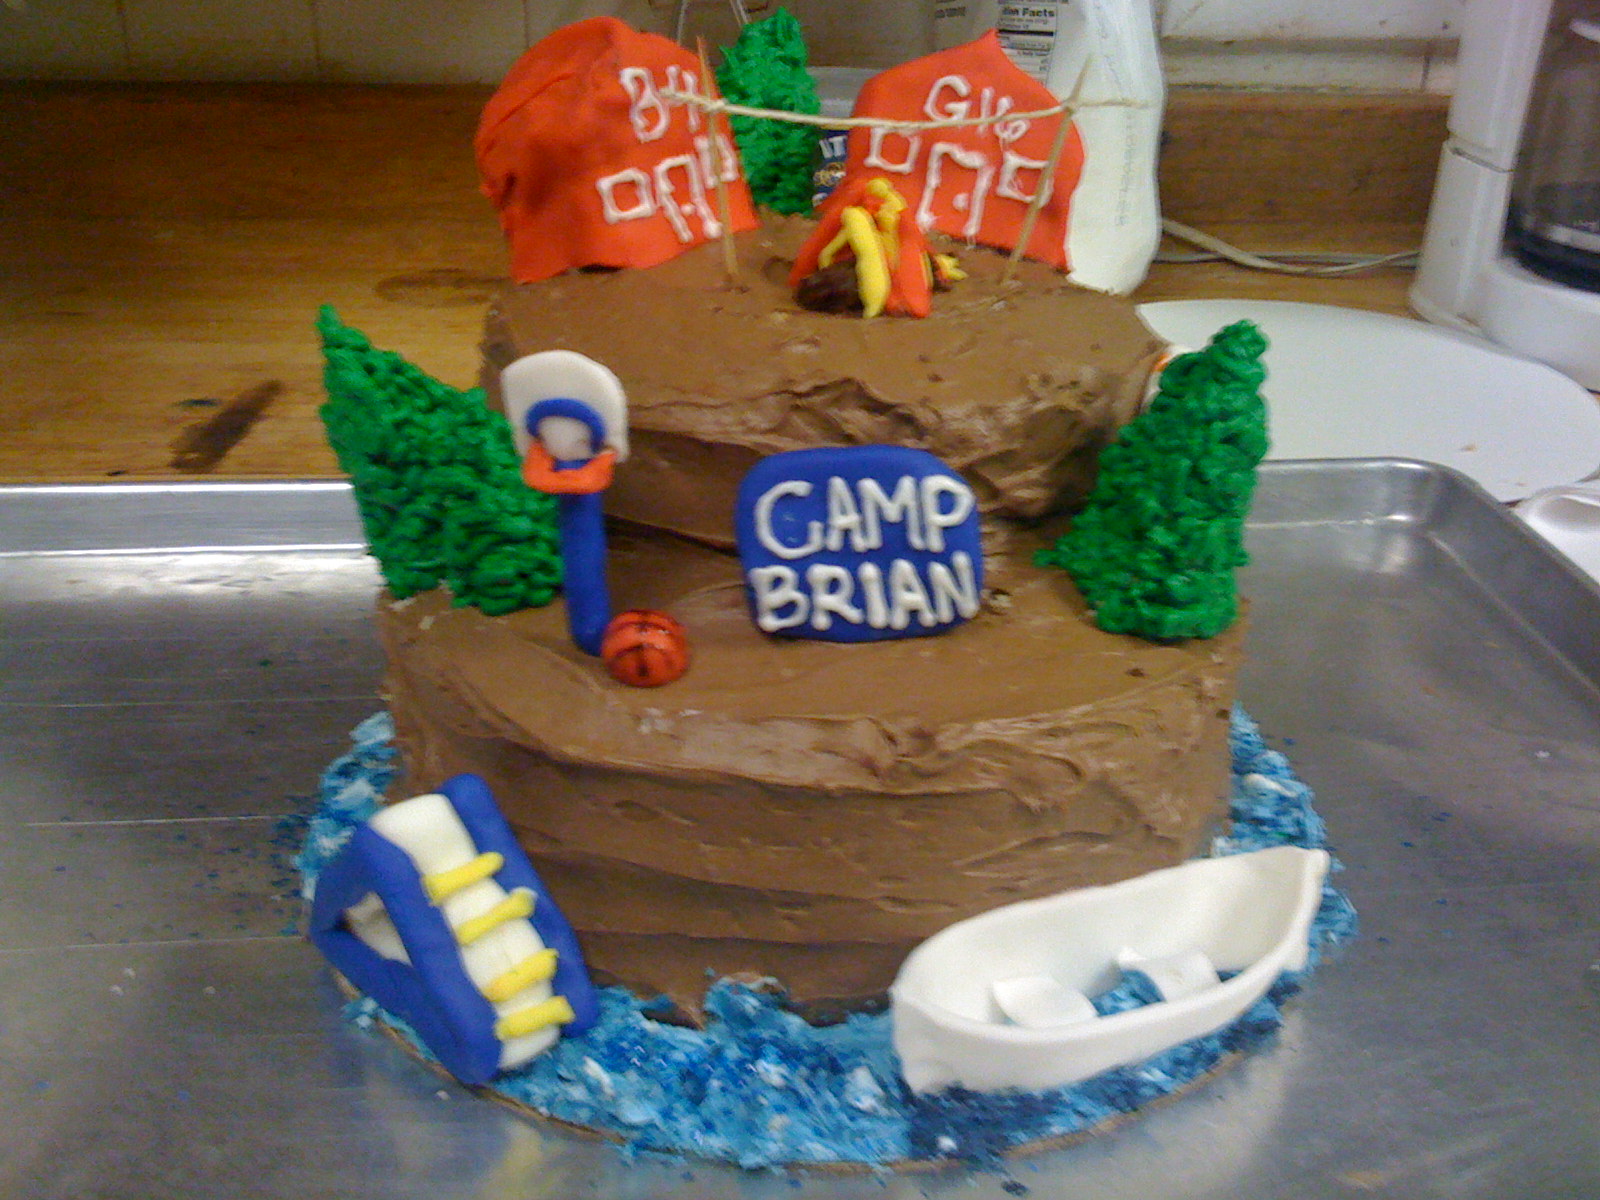 Camp Brian